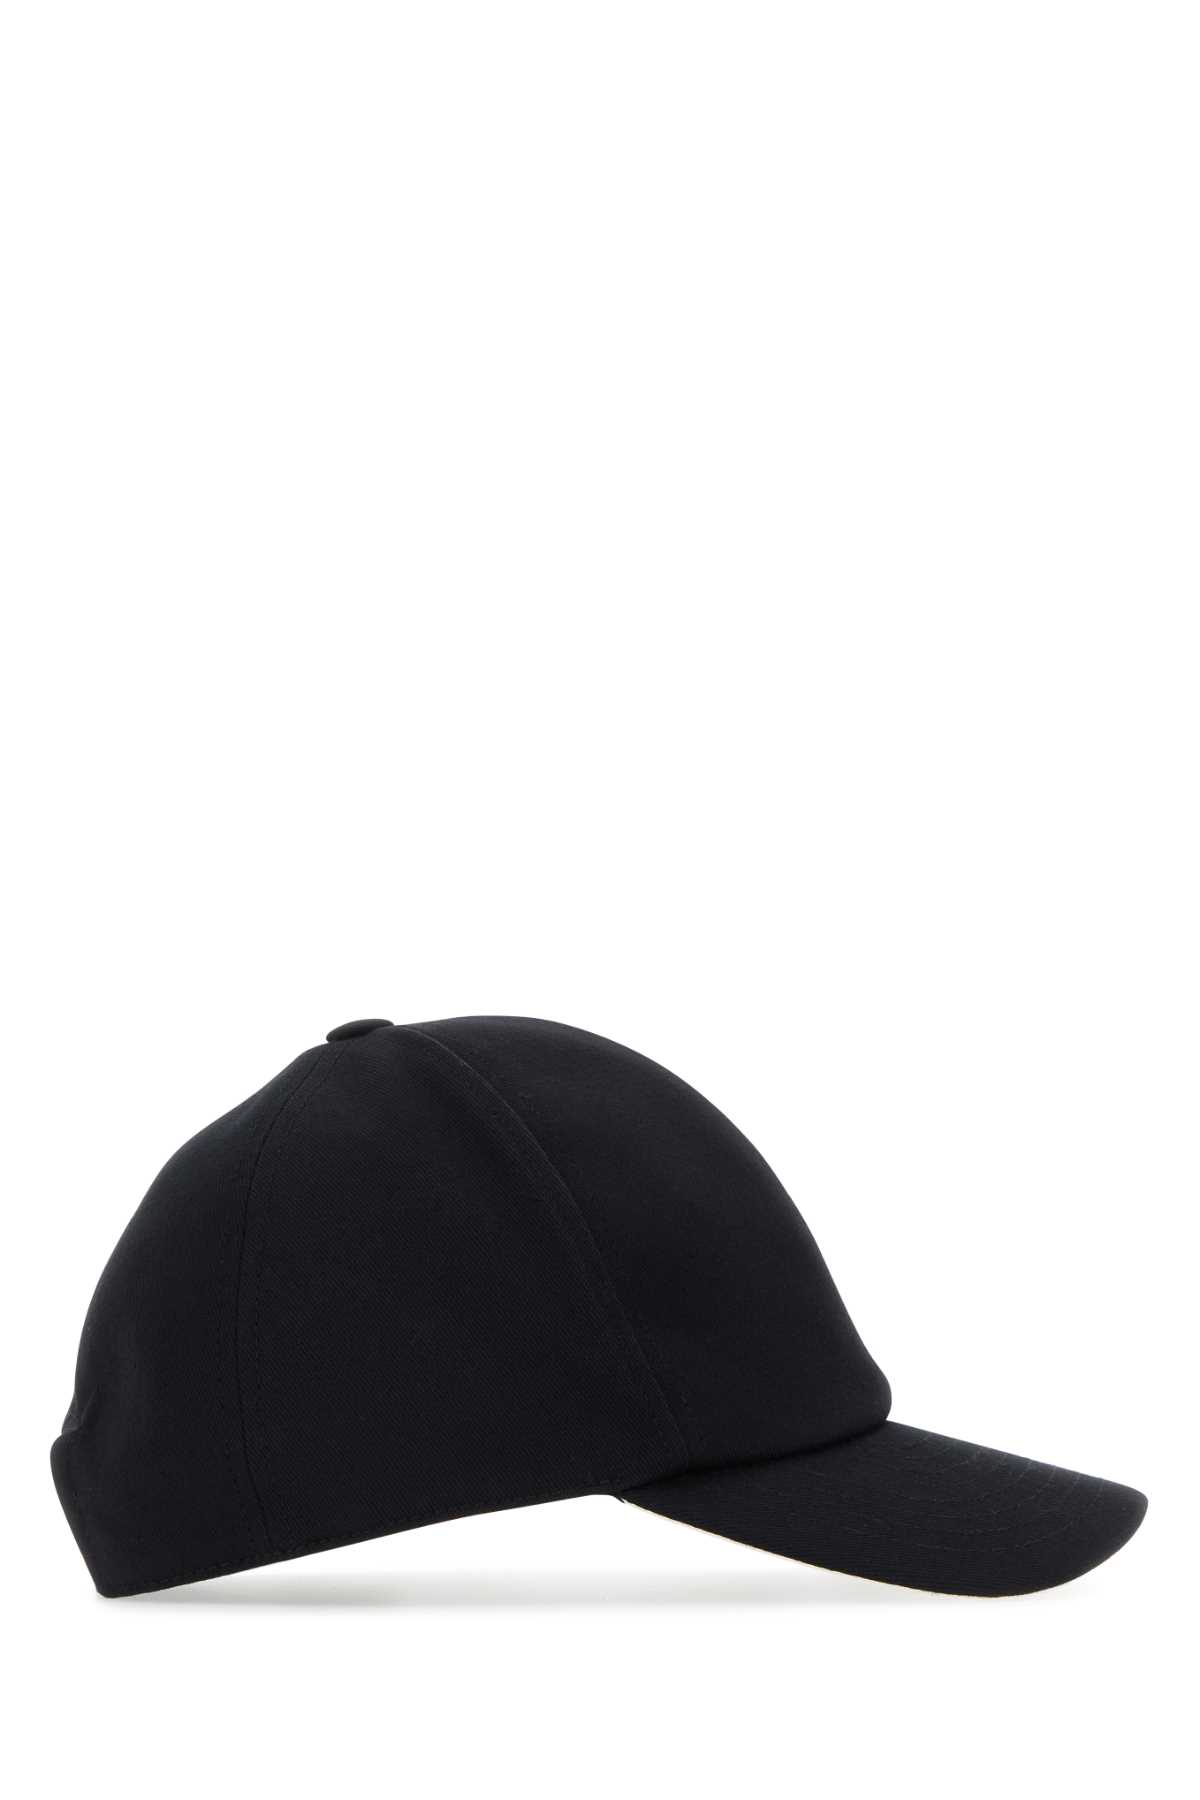 Shop Courrèges Black Cotton Baseball Cap